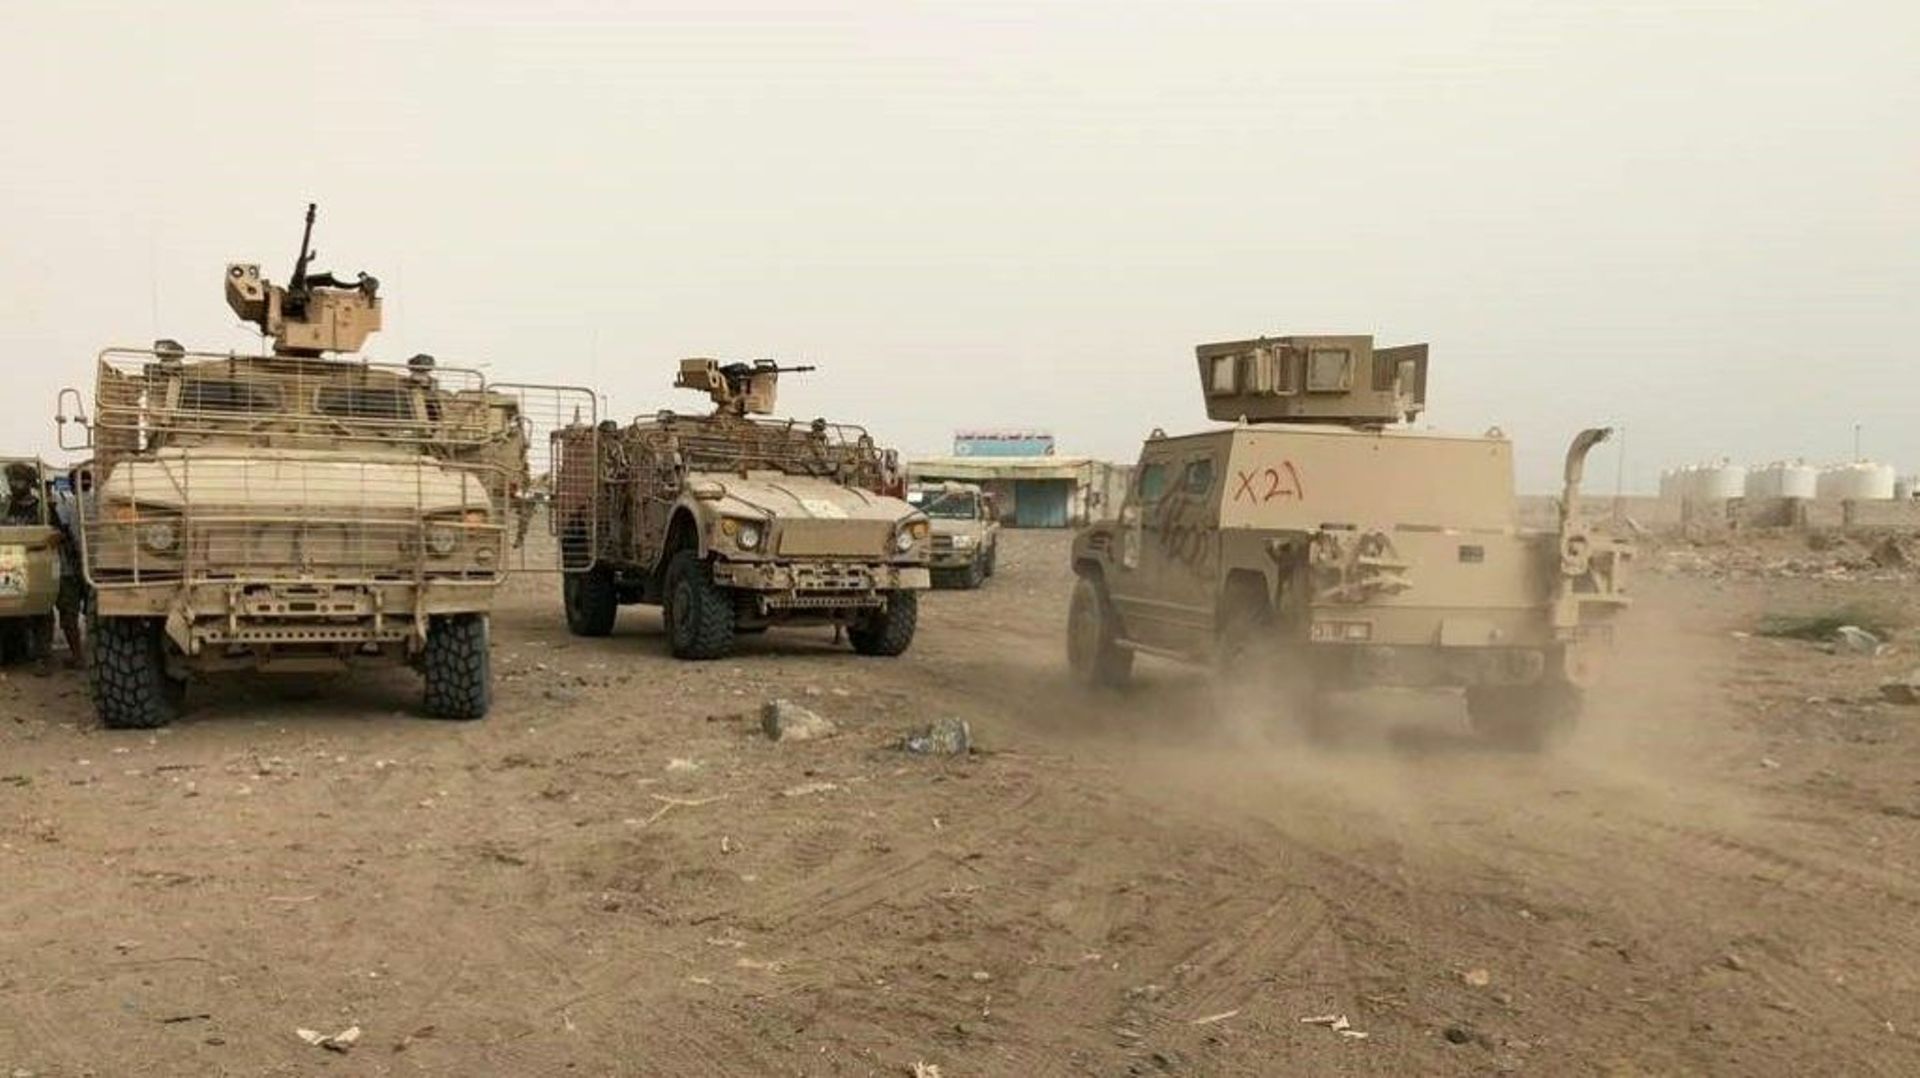 Les forces progouvernementales yéménites avancent vers l'aéroport de Hodeida lors d'une offensive contre les rebelles houthis, le 19 juin 2018